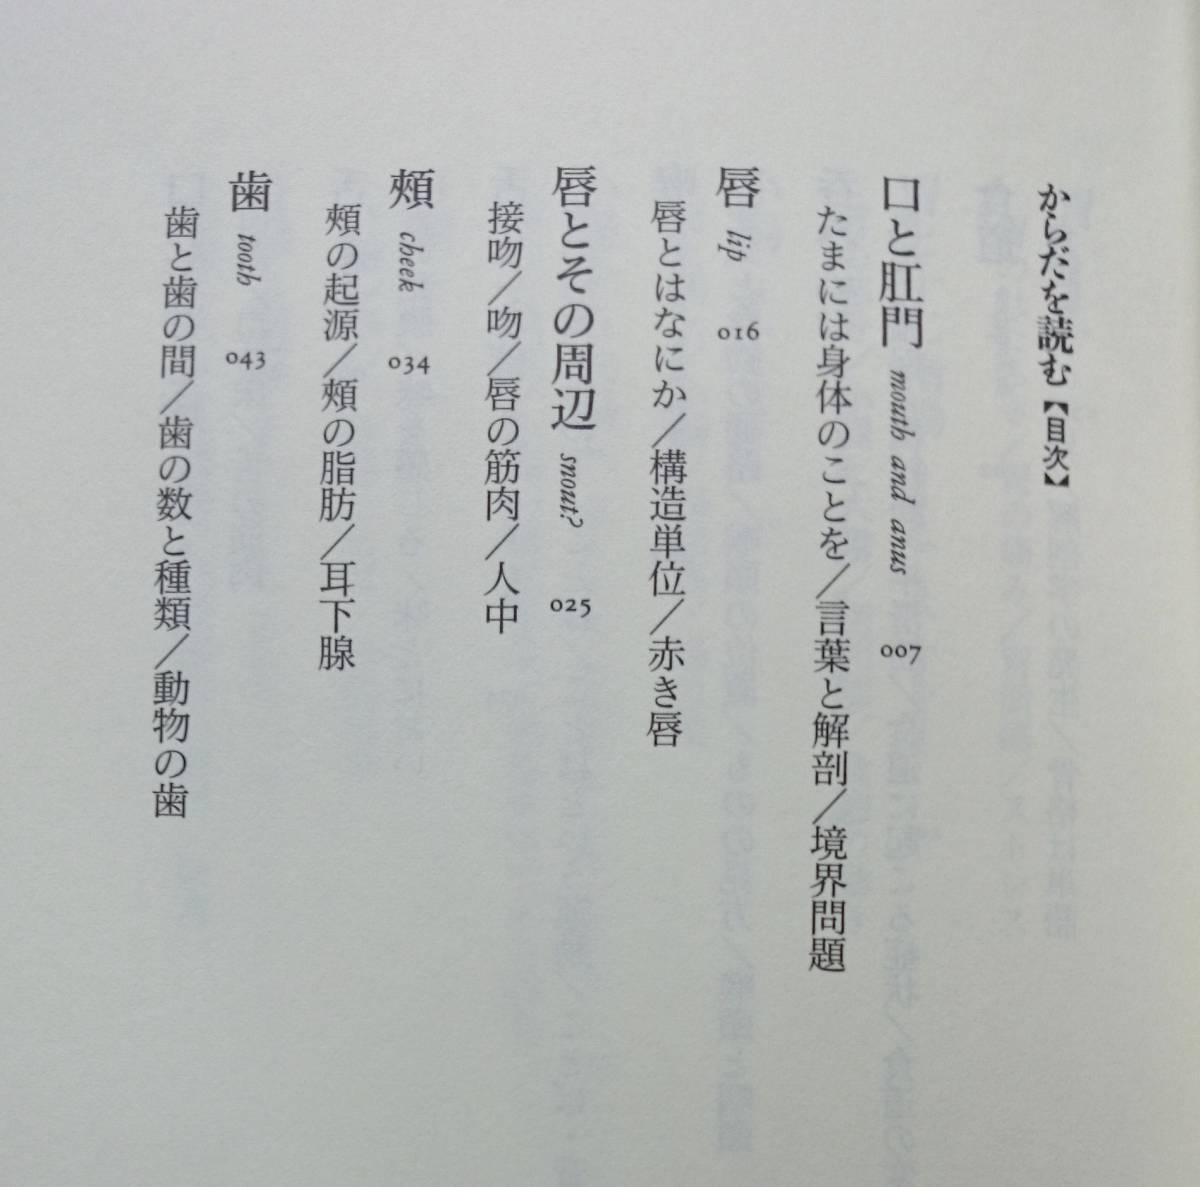  из .. читать Yoro Takeshi Chikuma новая книга включая доставку 